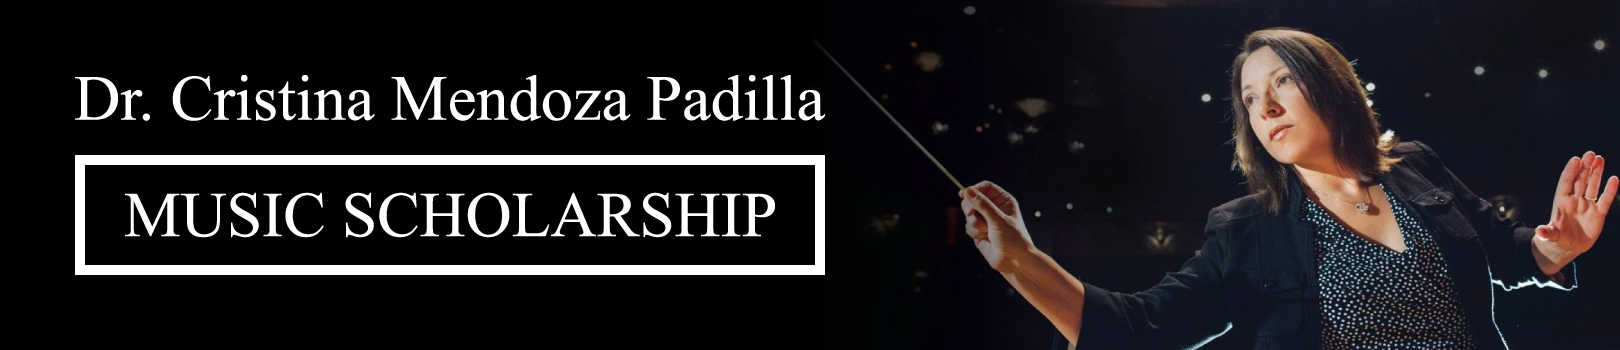 Dr. Cristina Mendoza Padilla, Music Scholarship